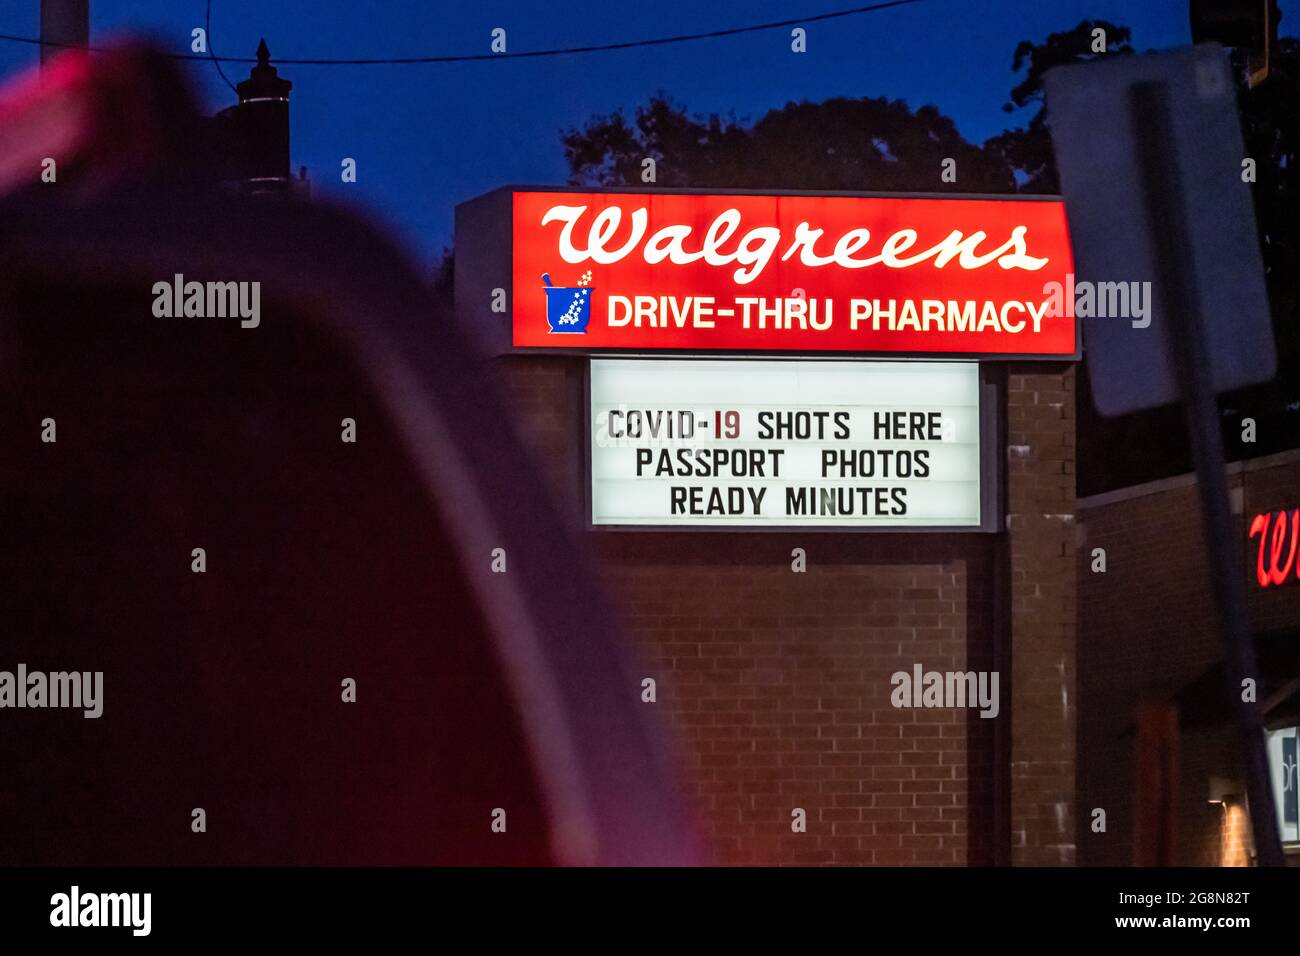 Cartello illuminato per farmacia Walgreens che offre COVID-19 scatti e foto istantanee passaporto a Snellville, Georgia. (STATI UNITI) Foto Stock